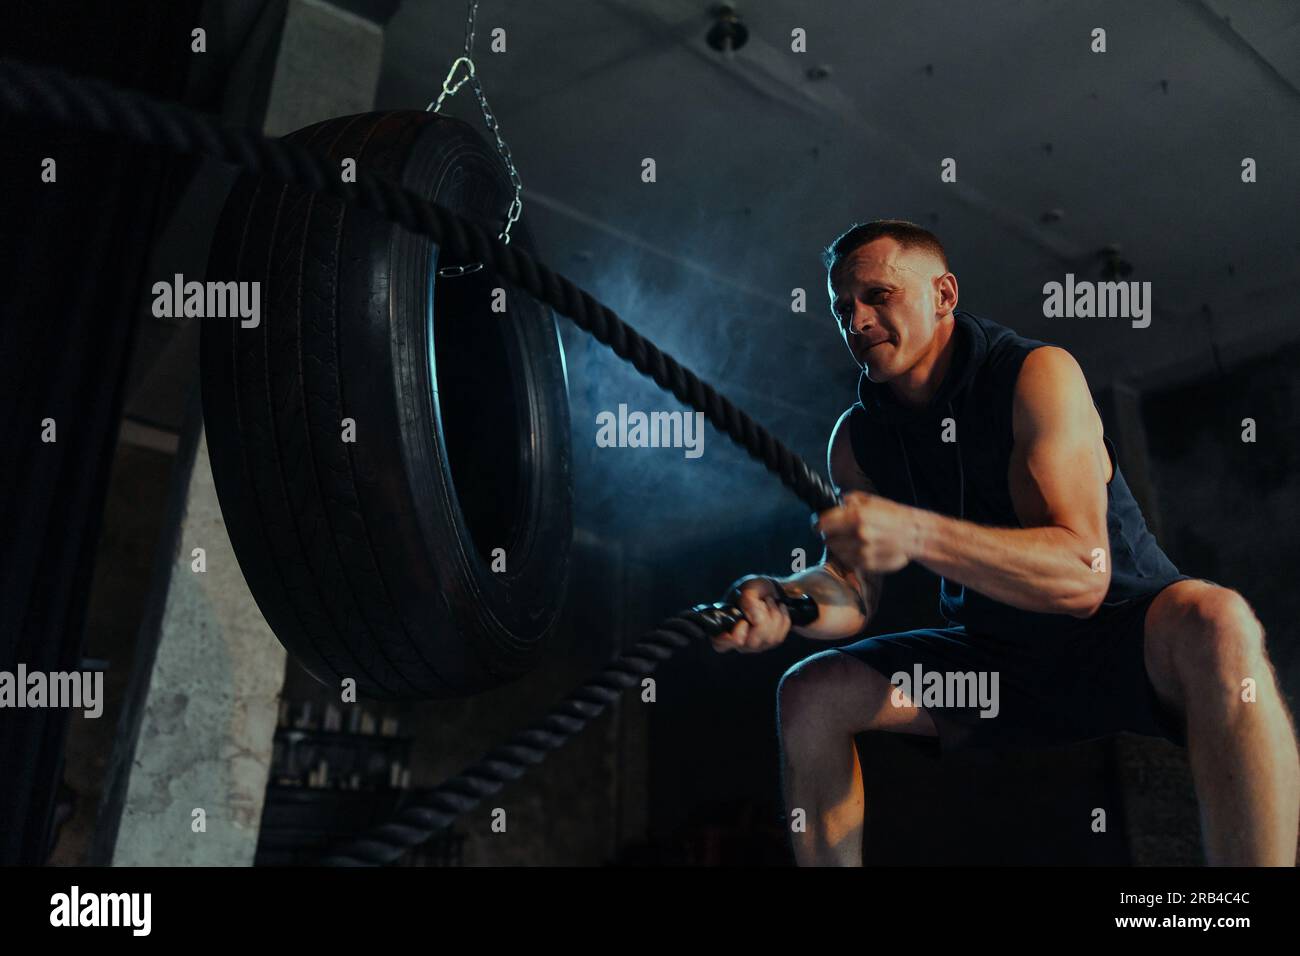 Kräftiger Muskelmann, der in einem dunklen Fitnessstudio mit Kampfseilen trainiert. Seile für Crossfit- und Crossfit-Übungen. Trainingshänder mit Kampfseilen. Hintergrundbeleuchtung. Stockfoto